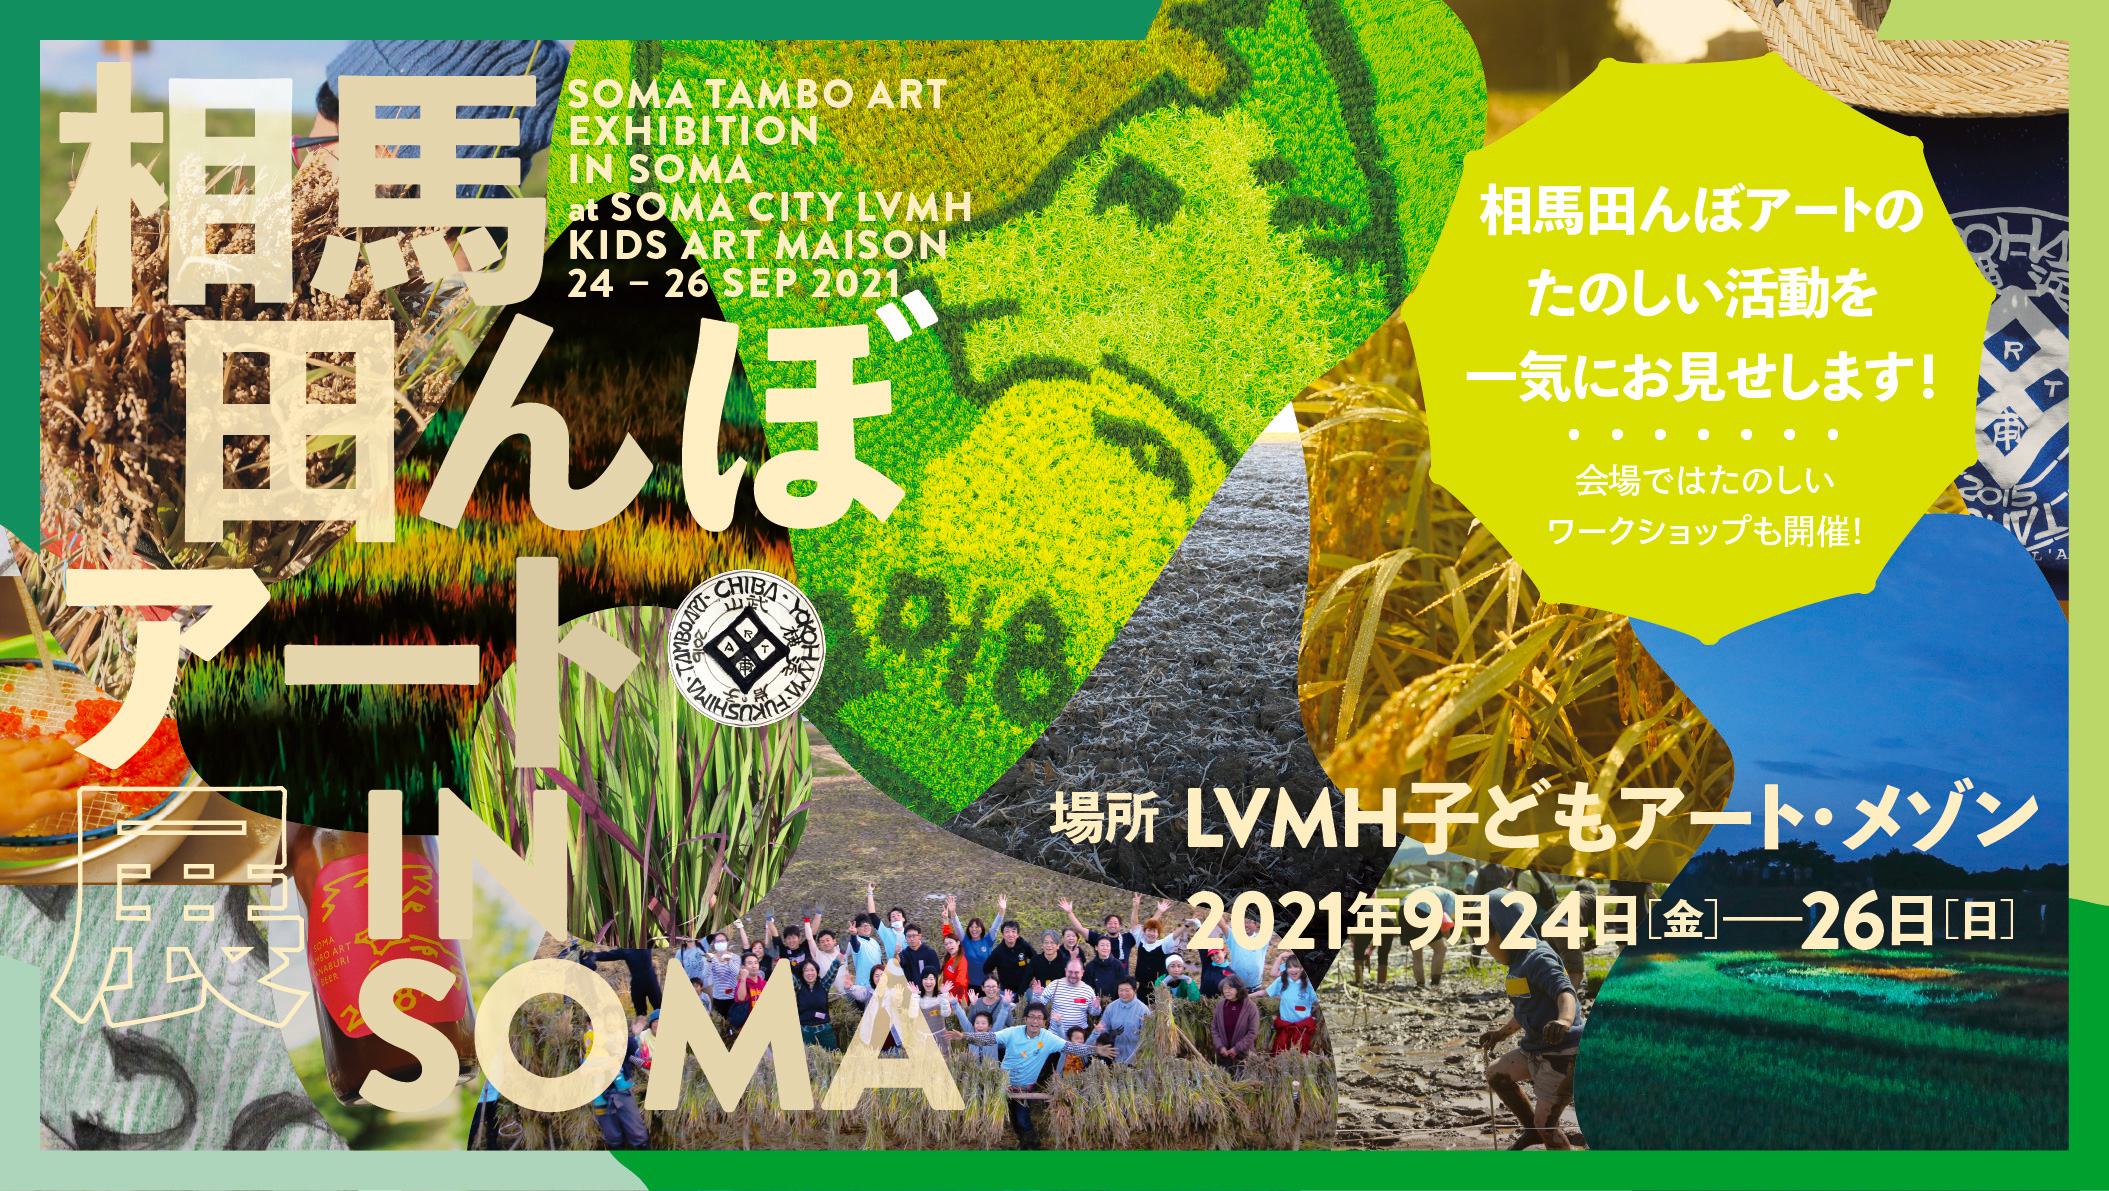 相馬田んぼアート展 in SOMA